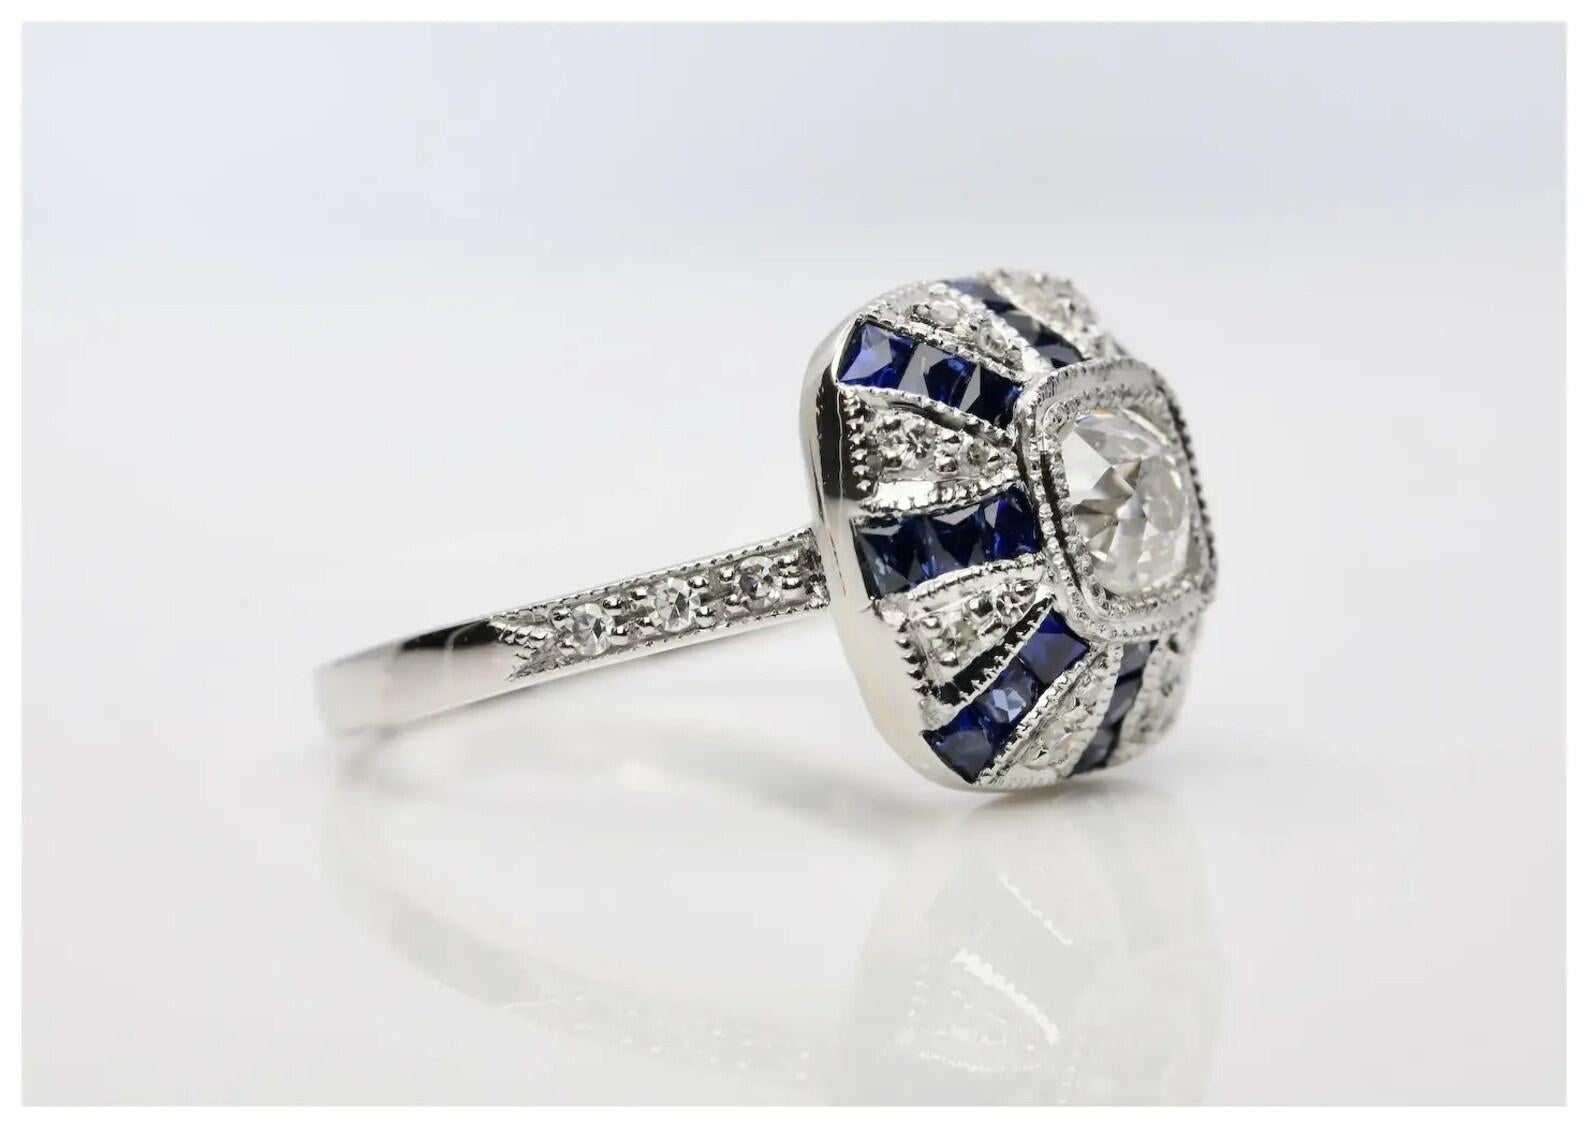 Ein schöner und dramatischer Ring aus Platin mit Diamanten und Saphiren im französischen Schliff.

Im Mittelpunkt steht ein kissenförmiger Diamant von 0,60 Karat im Altminenschliff mit der Farbe H und der Reinheit VS2, der in einer miligranen